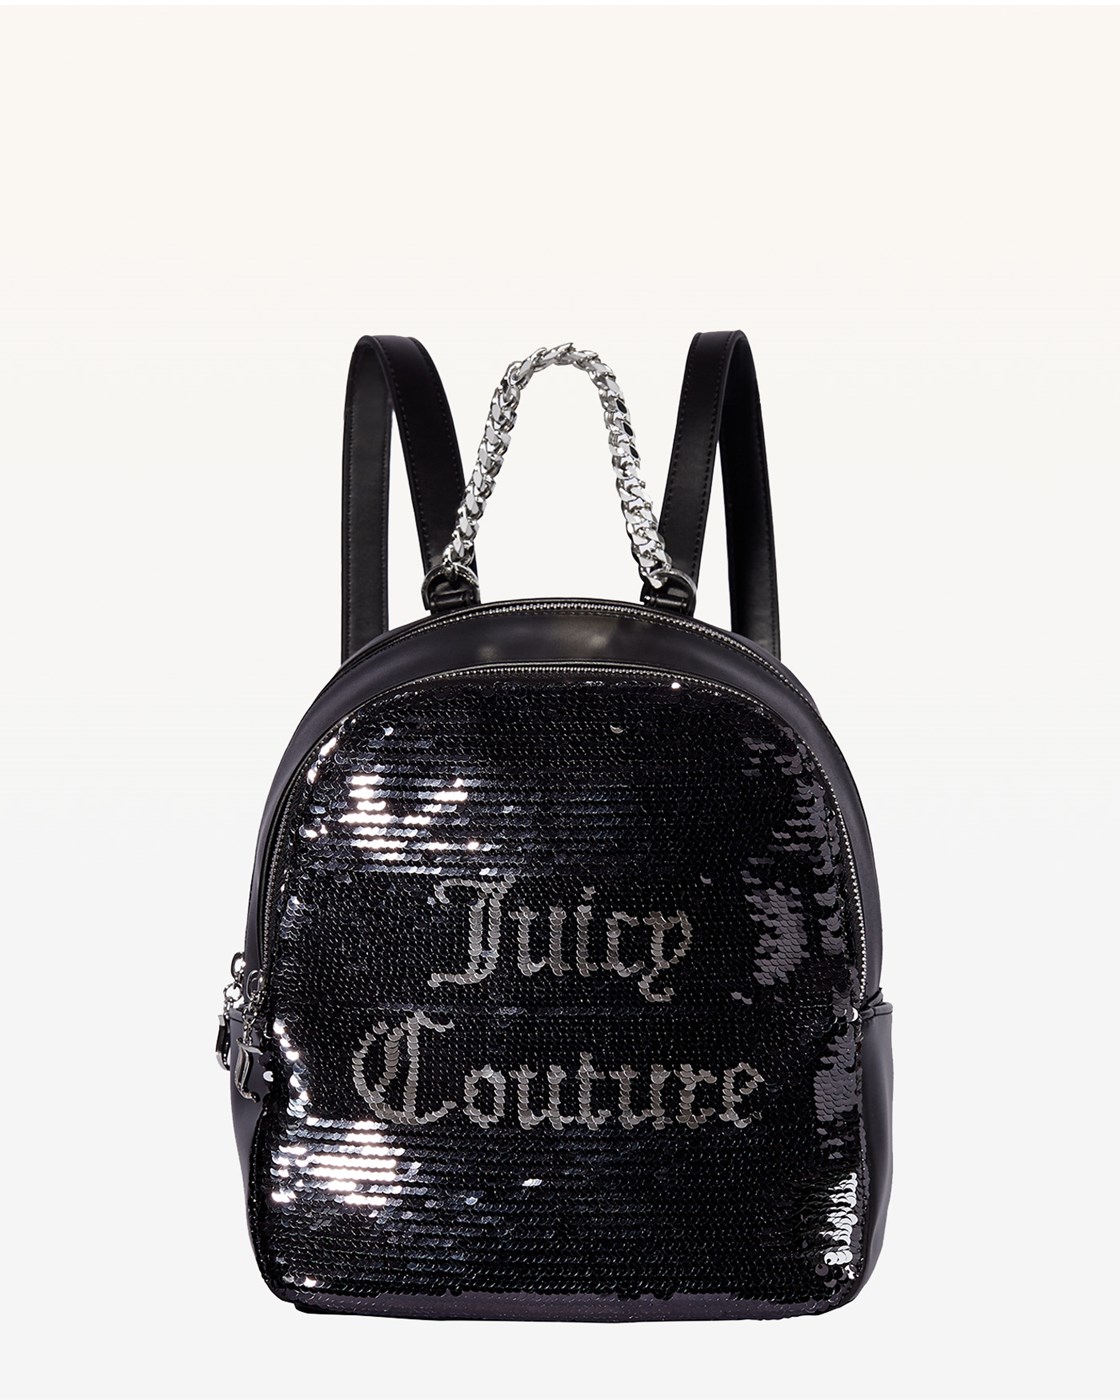 Juicy Couture Sierra Backpack